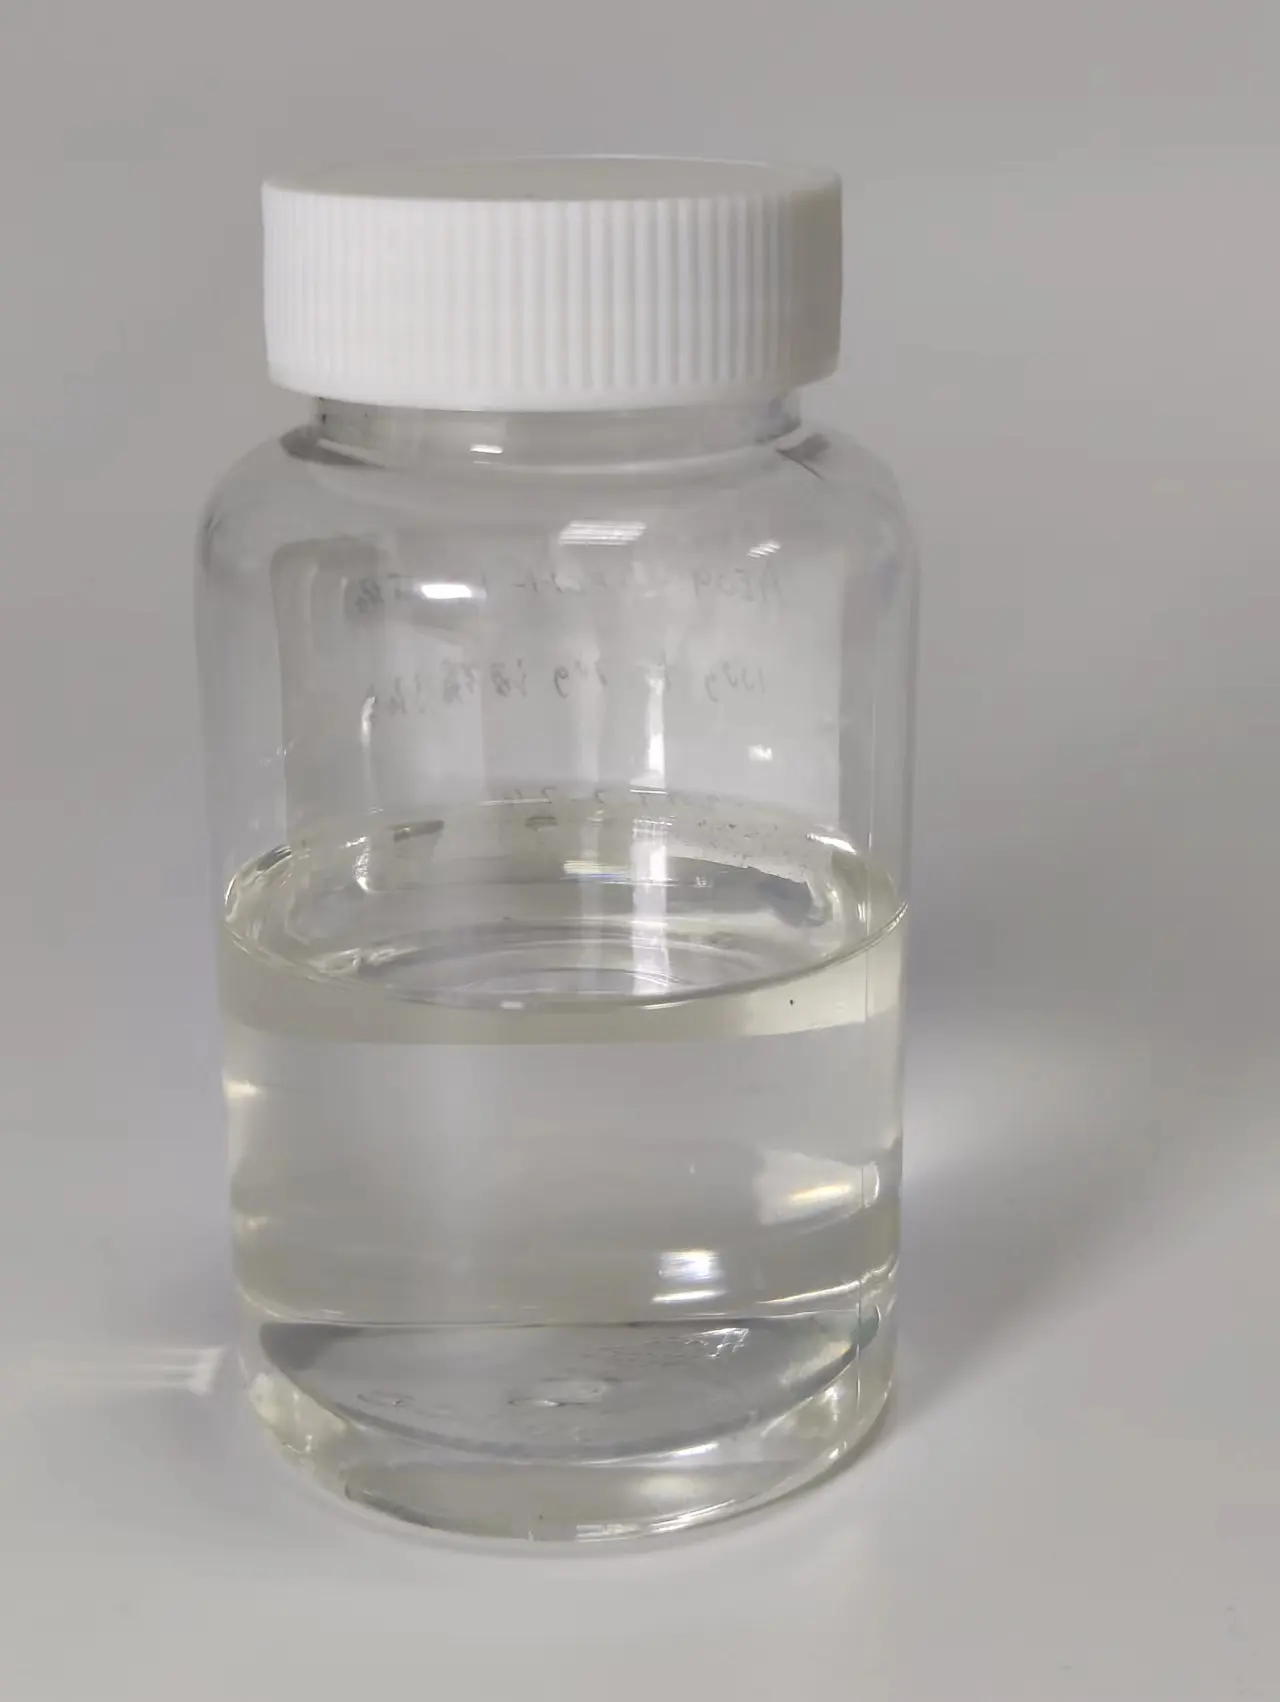 Chất nhũ hóa Anion chất hoạt động bề mặt genisal 3136 chất cồn cồn béo ether Ammonium Sulfate muối tạo bọt thấp